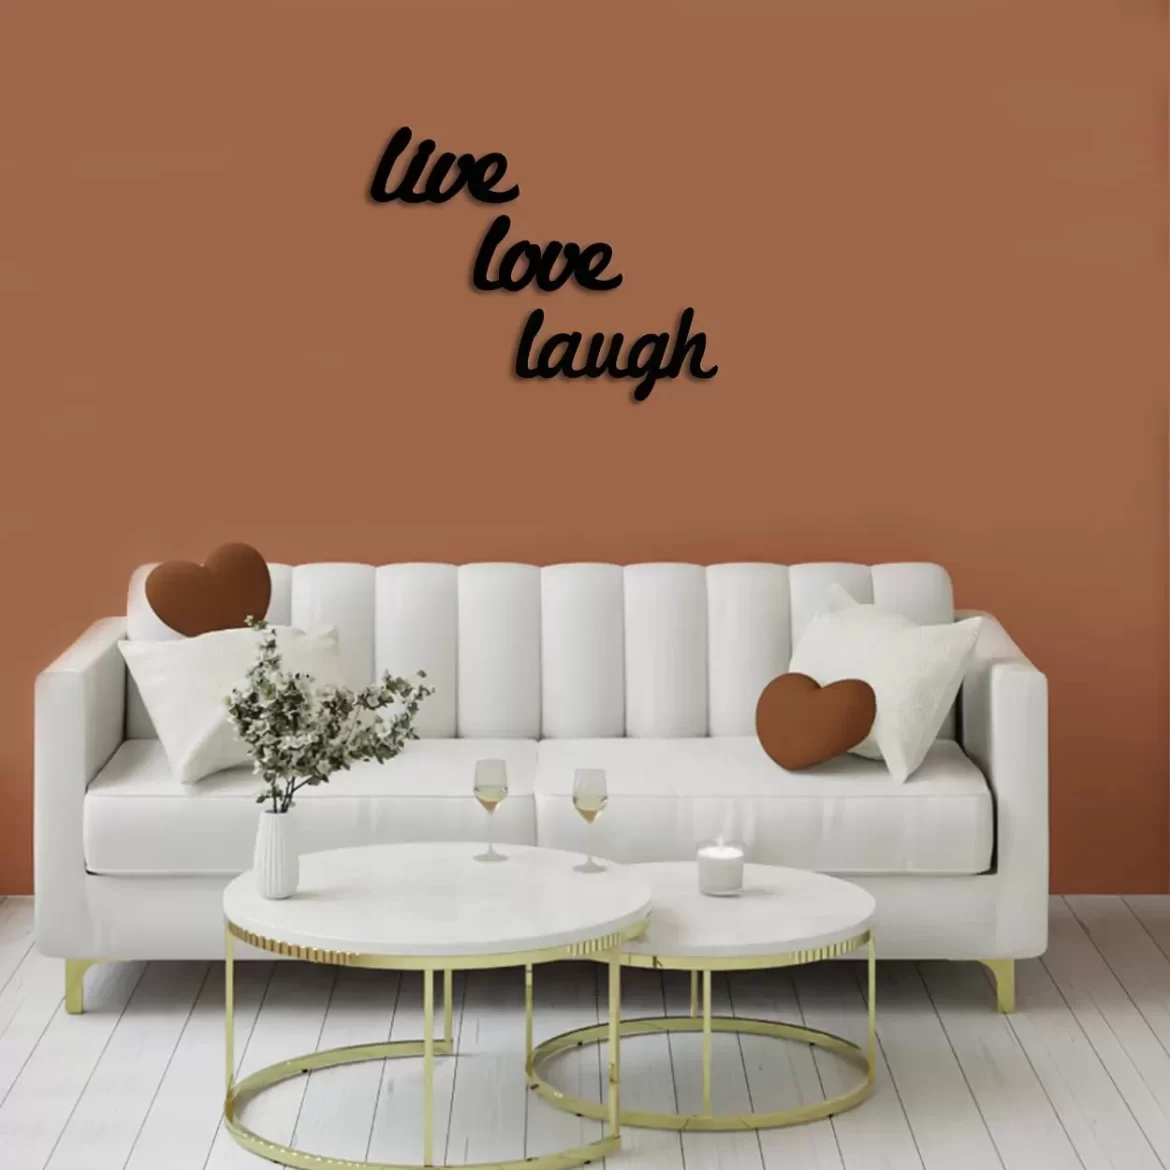 Live love laugh wall decor